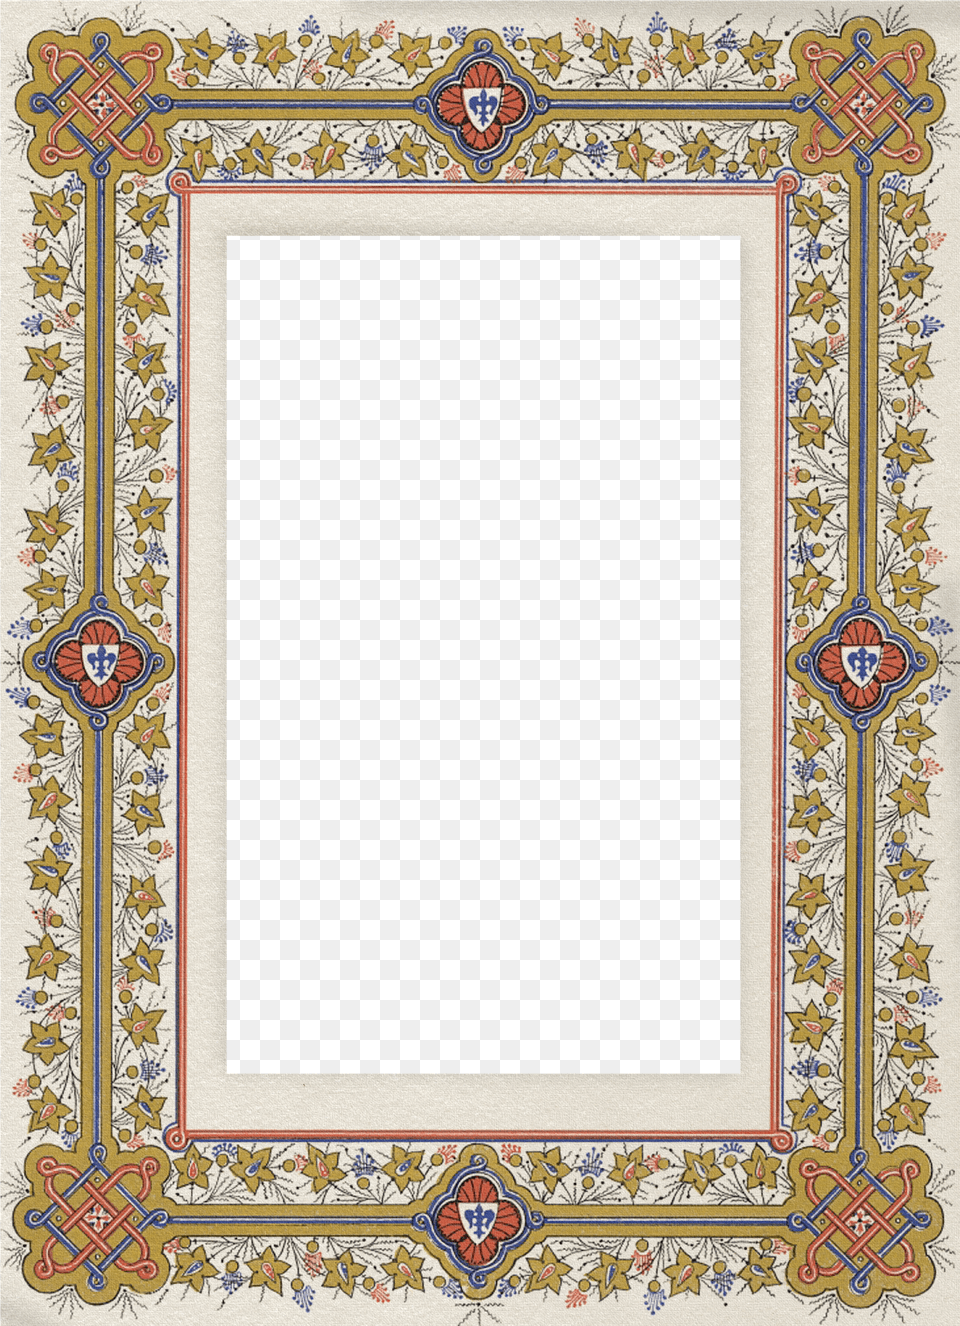 Al Quran Border Design Png Image